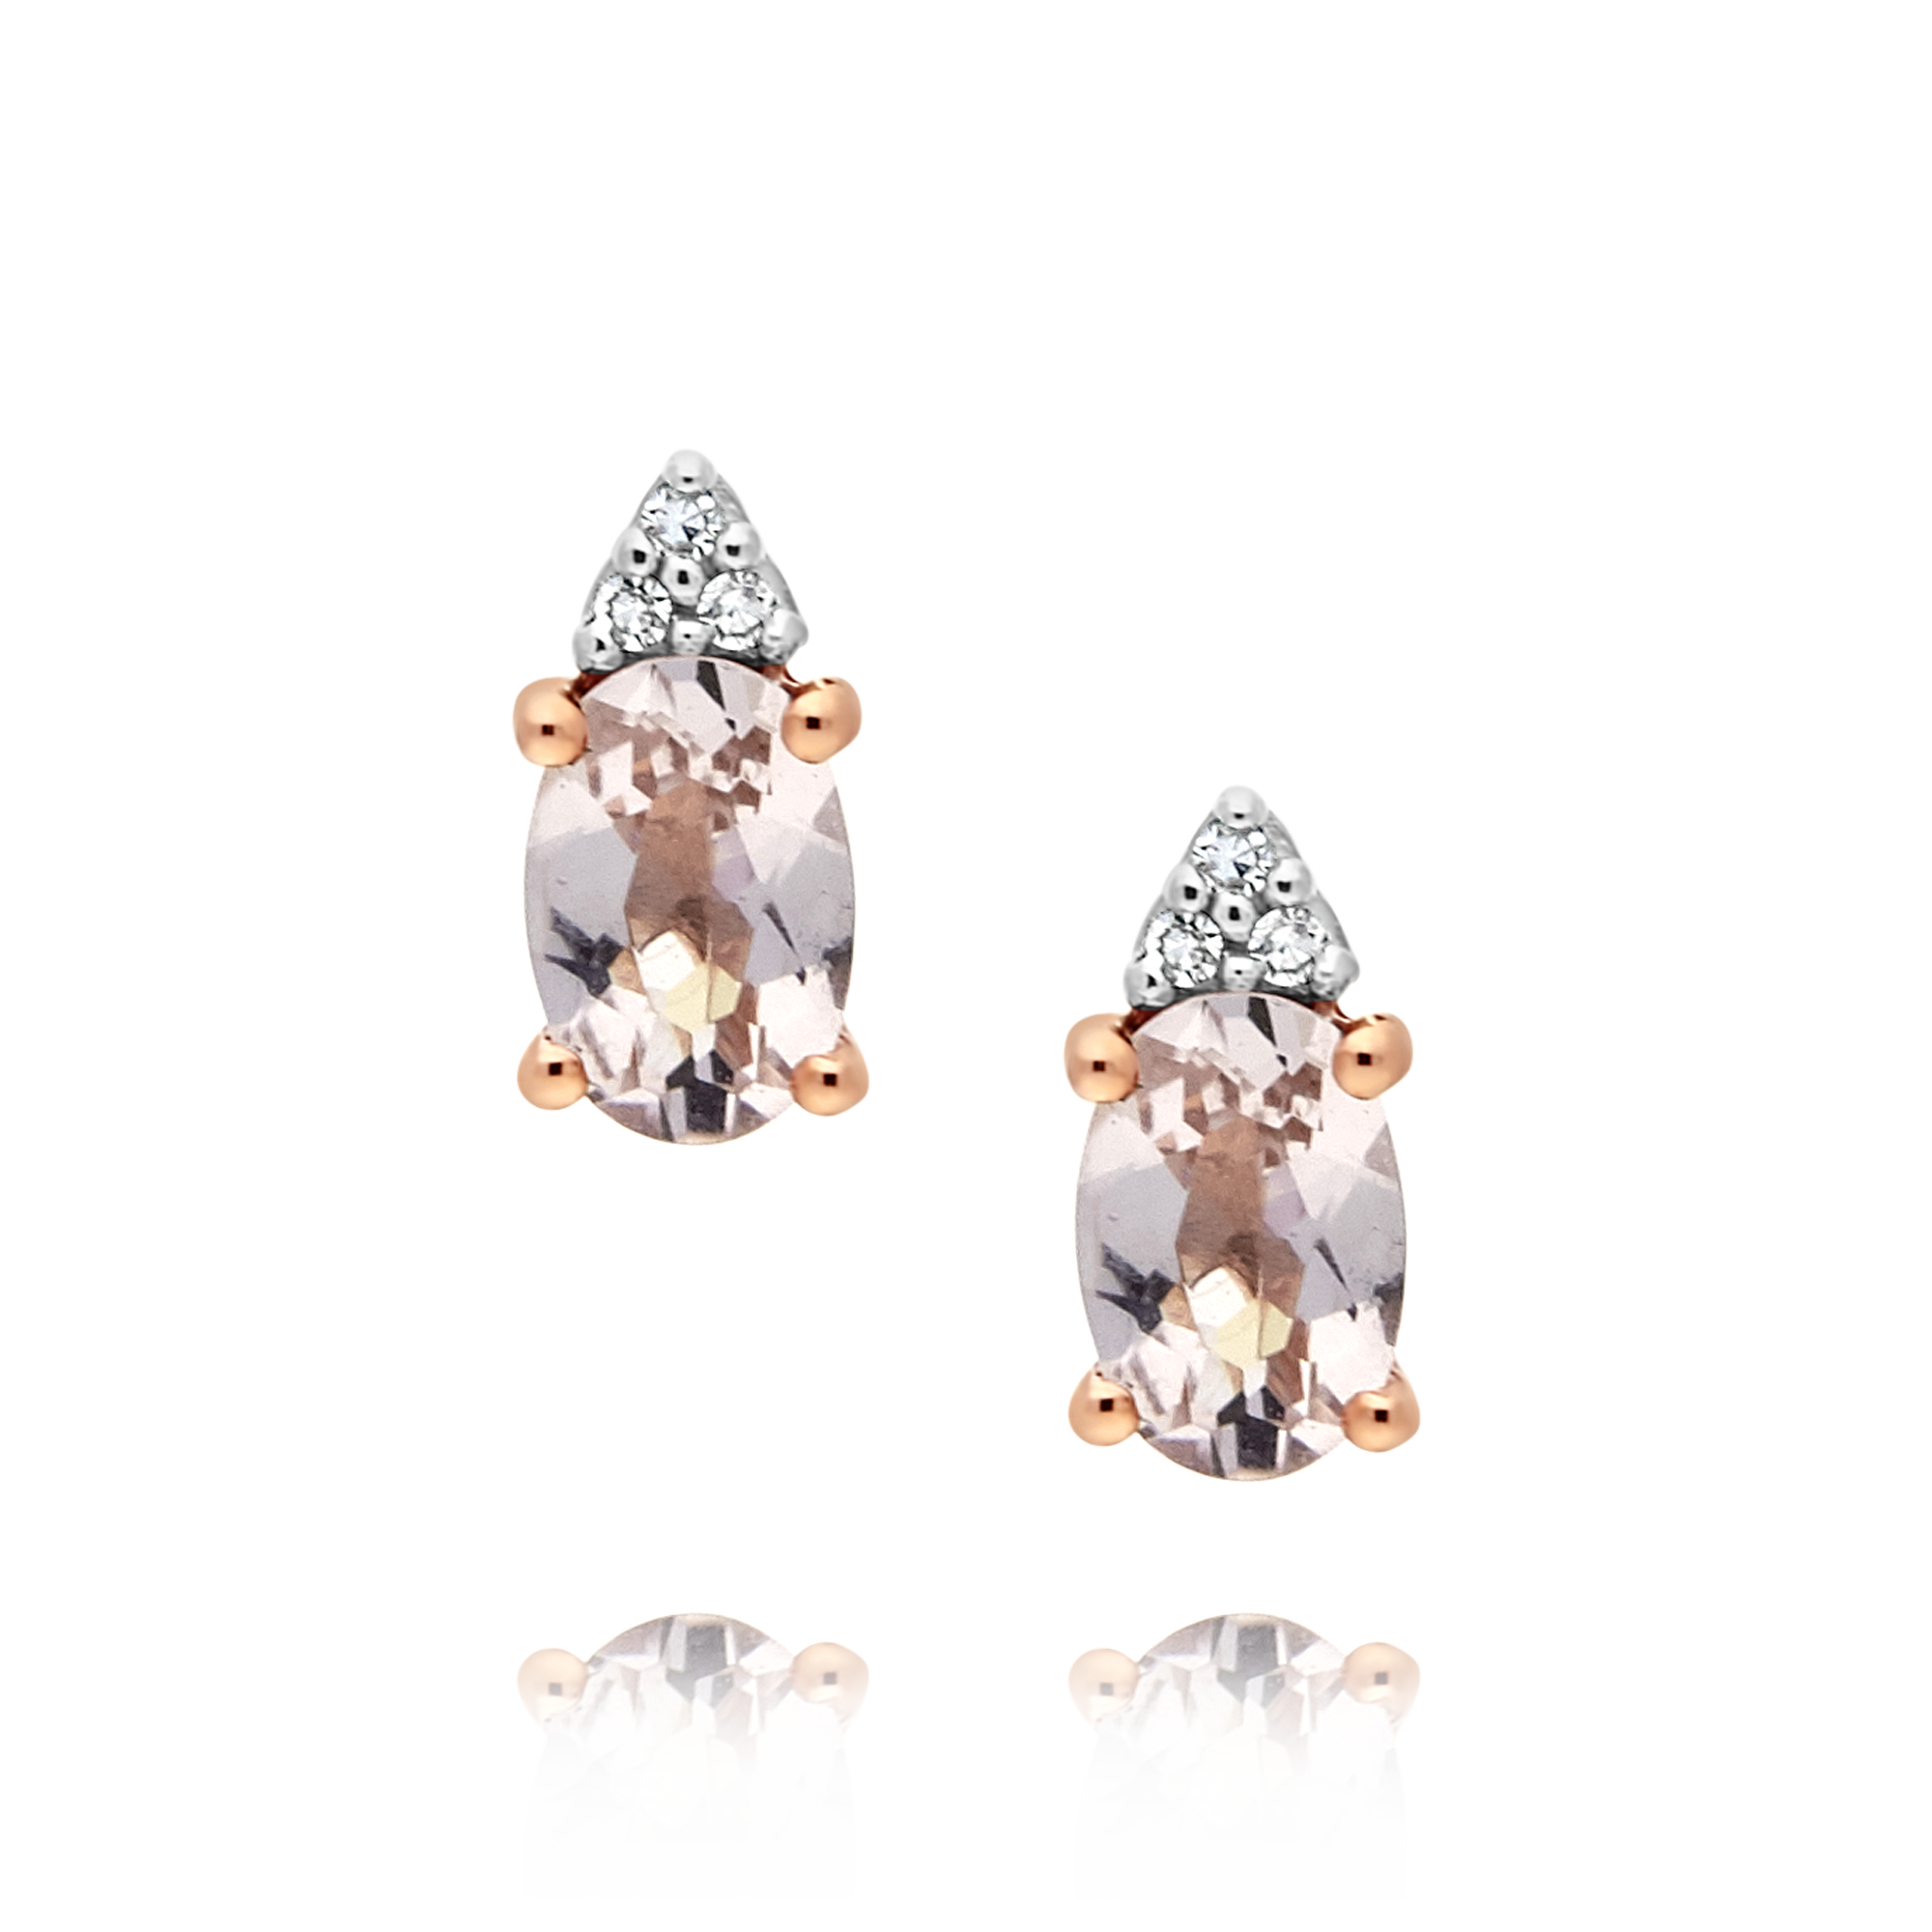 Morganite and Diamond Earrings, Rose Gold